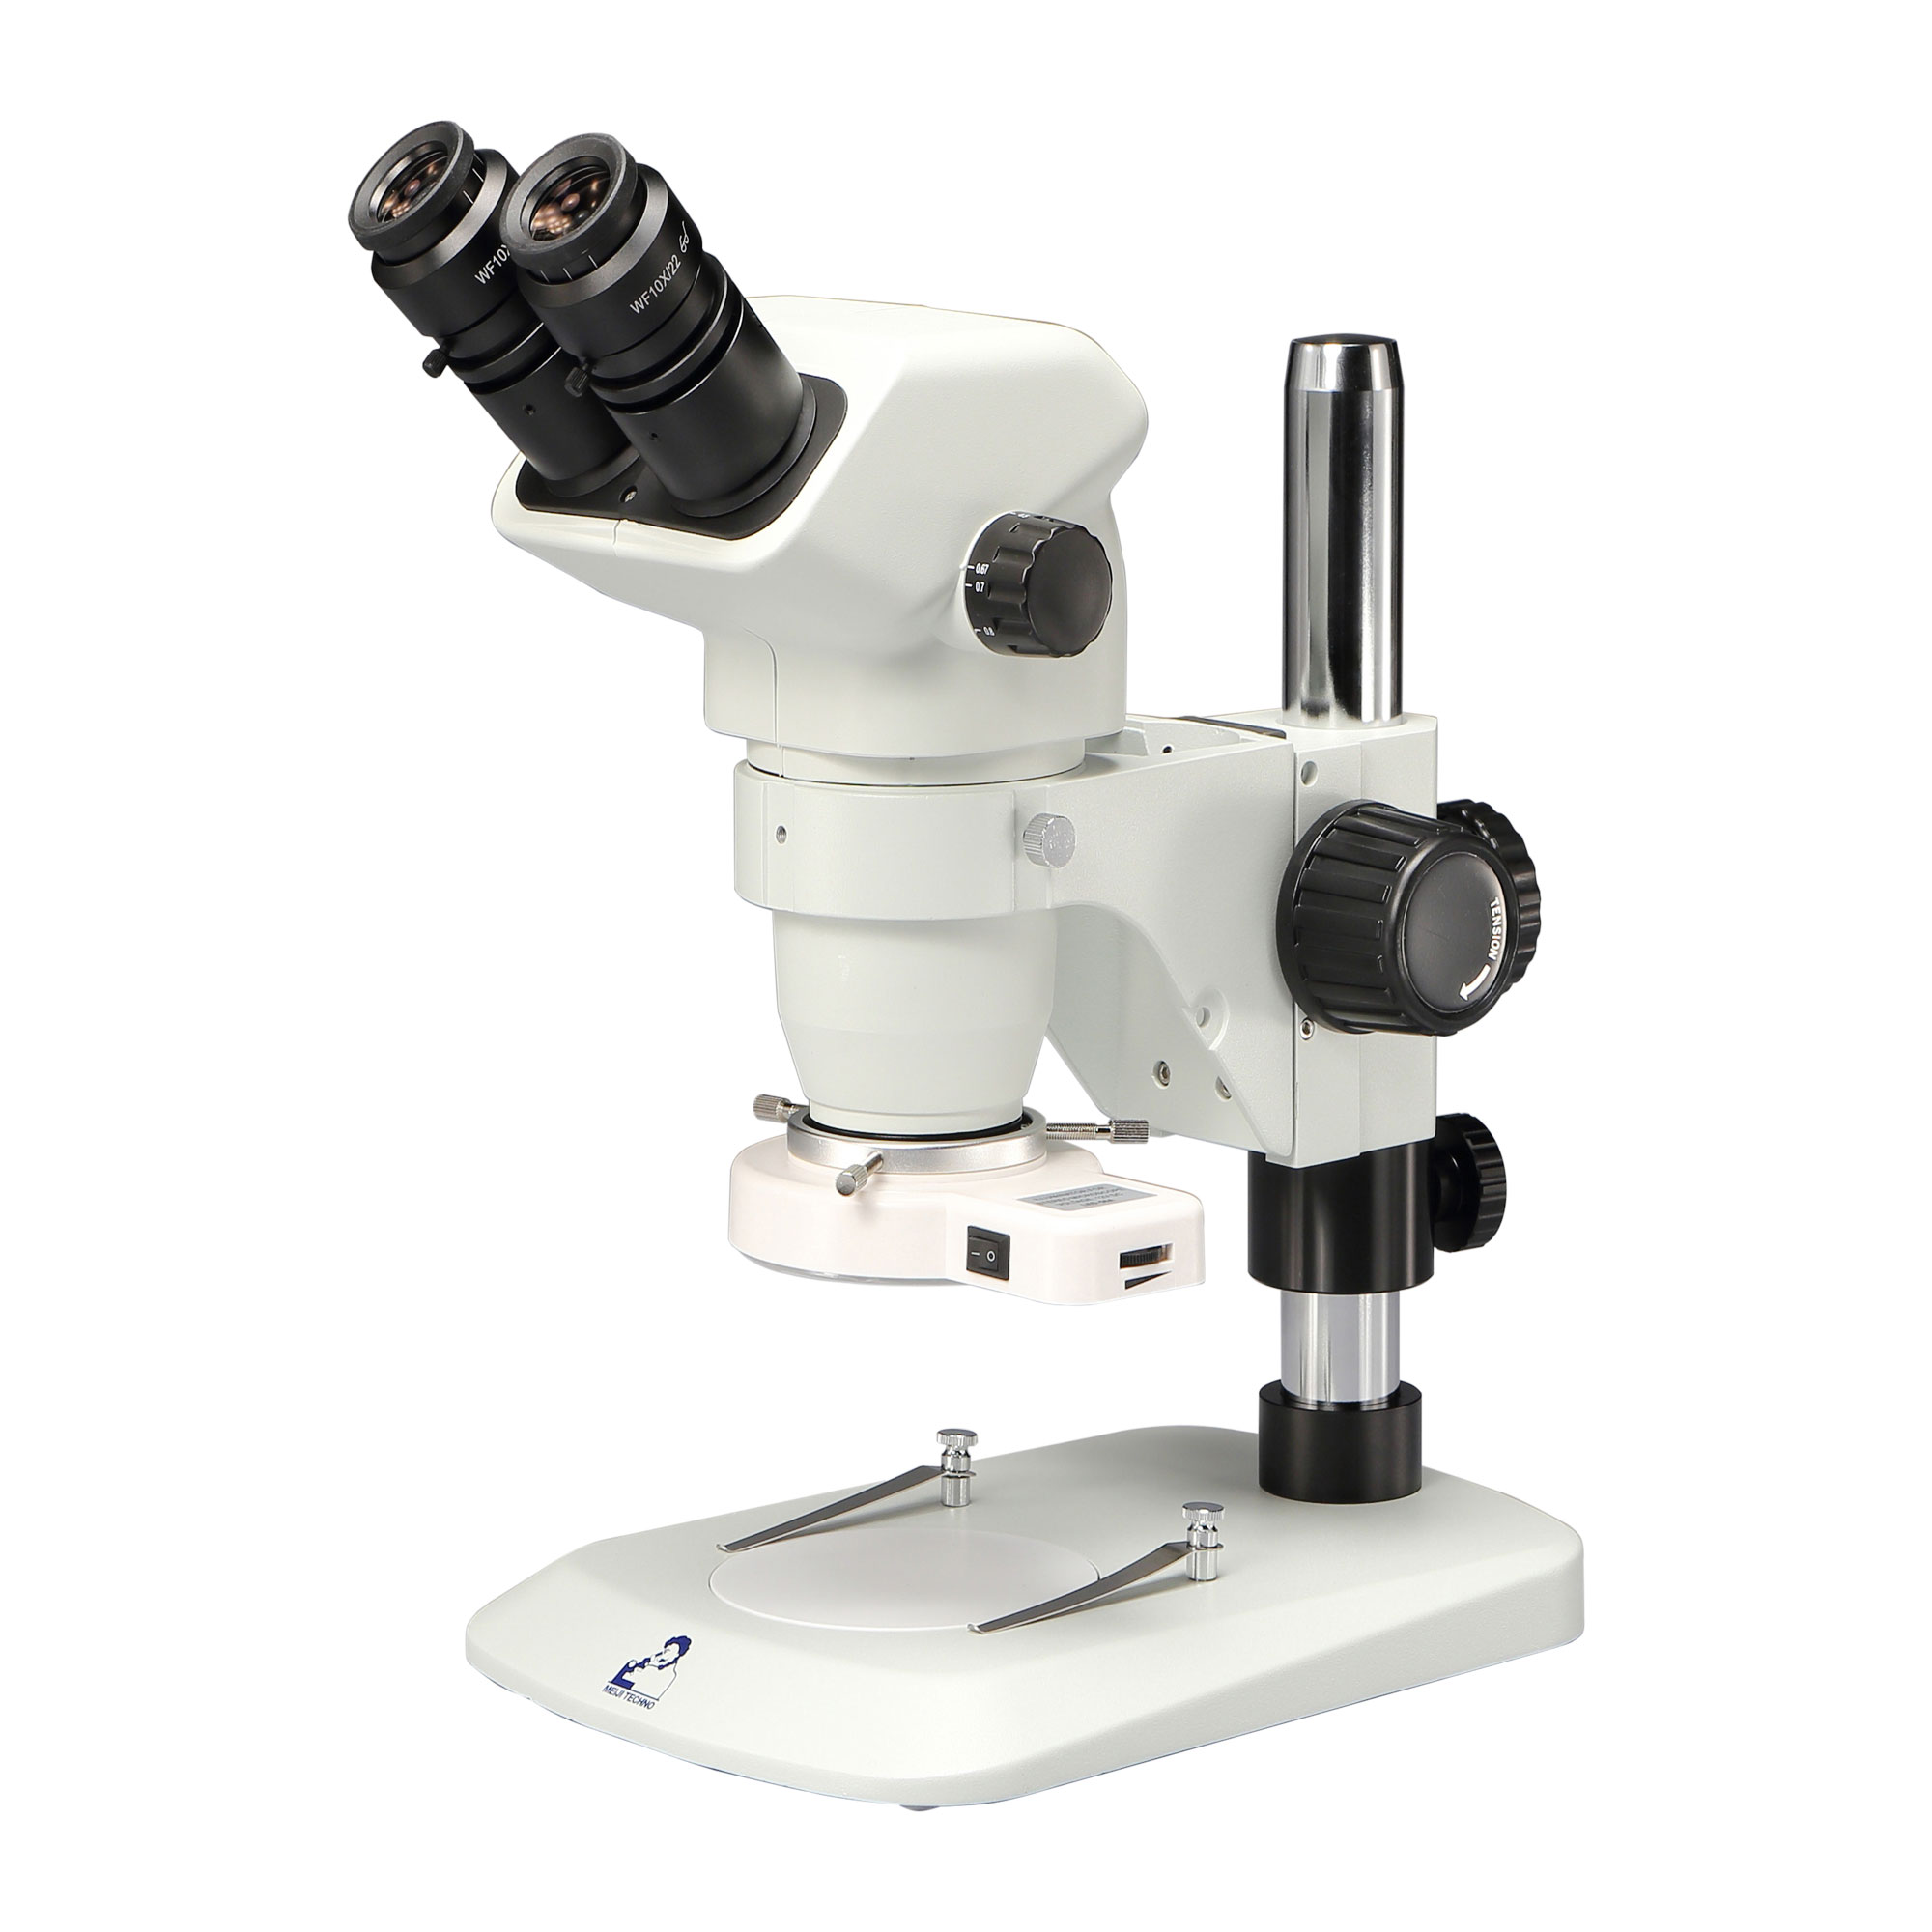 双眼実体顕微鏡 EM-50/962型